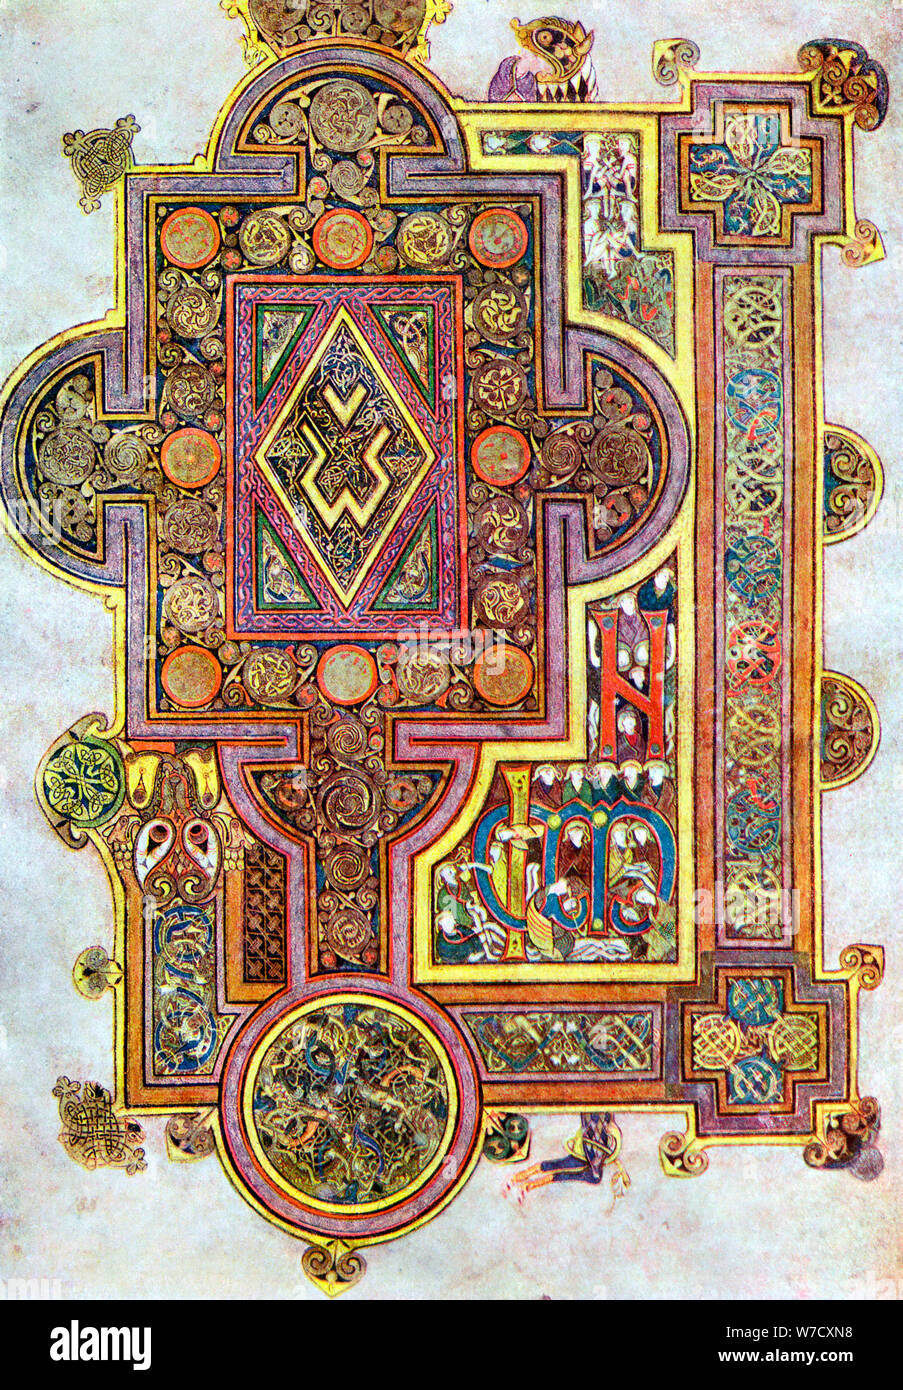 Premiers mots de l'Évangile de saint Luc Quoniam dans le Livre de Kells, c800. Artiste : Inconnu Banque D'Images